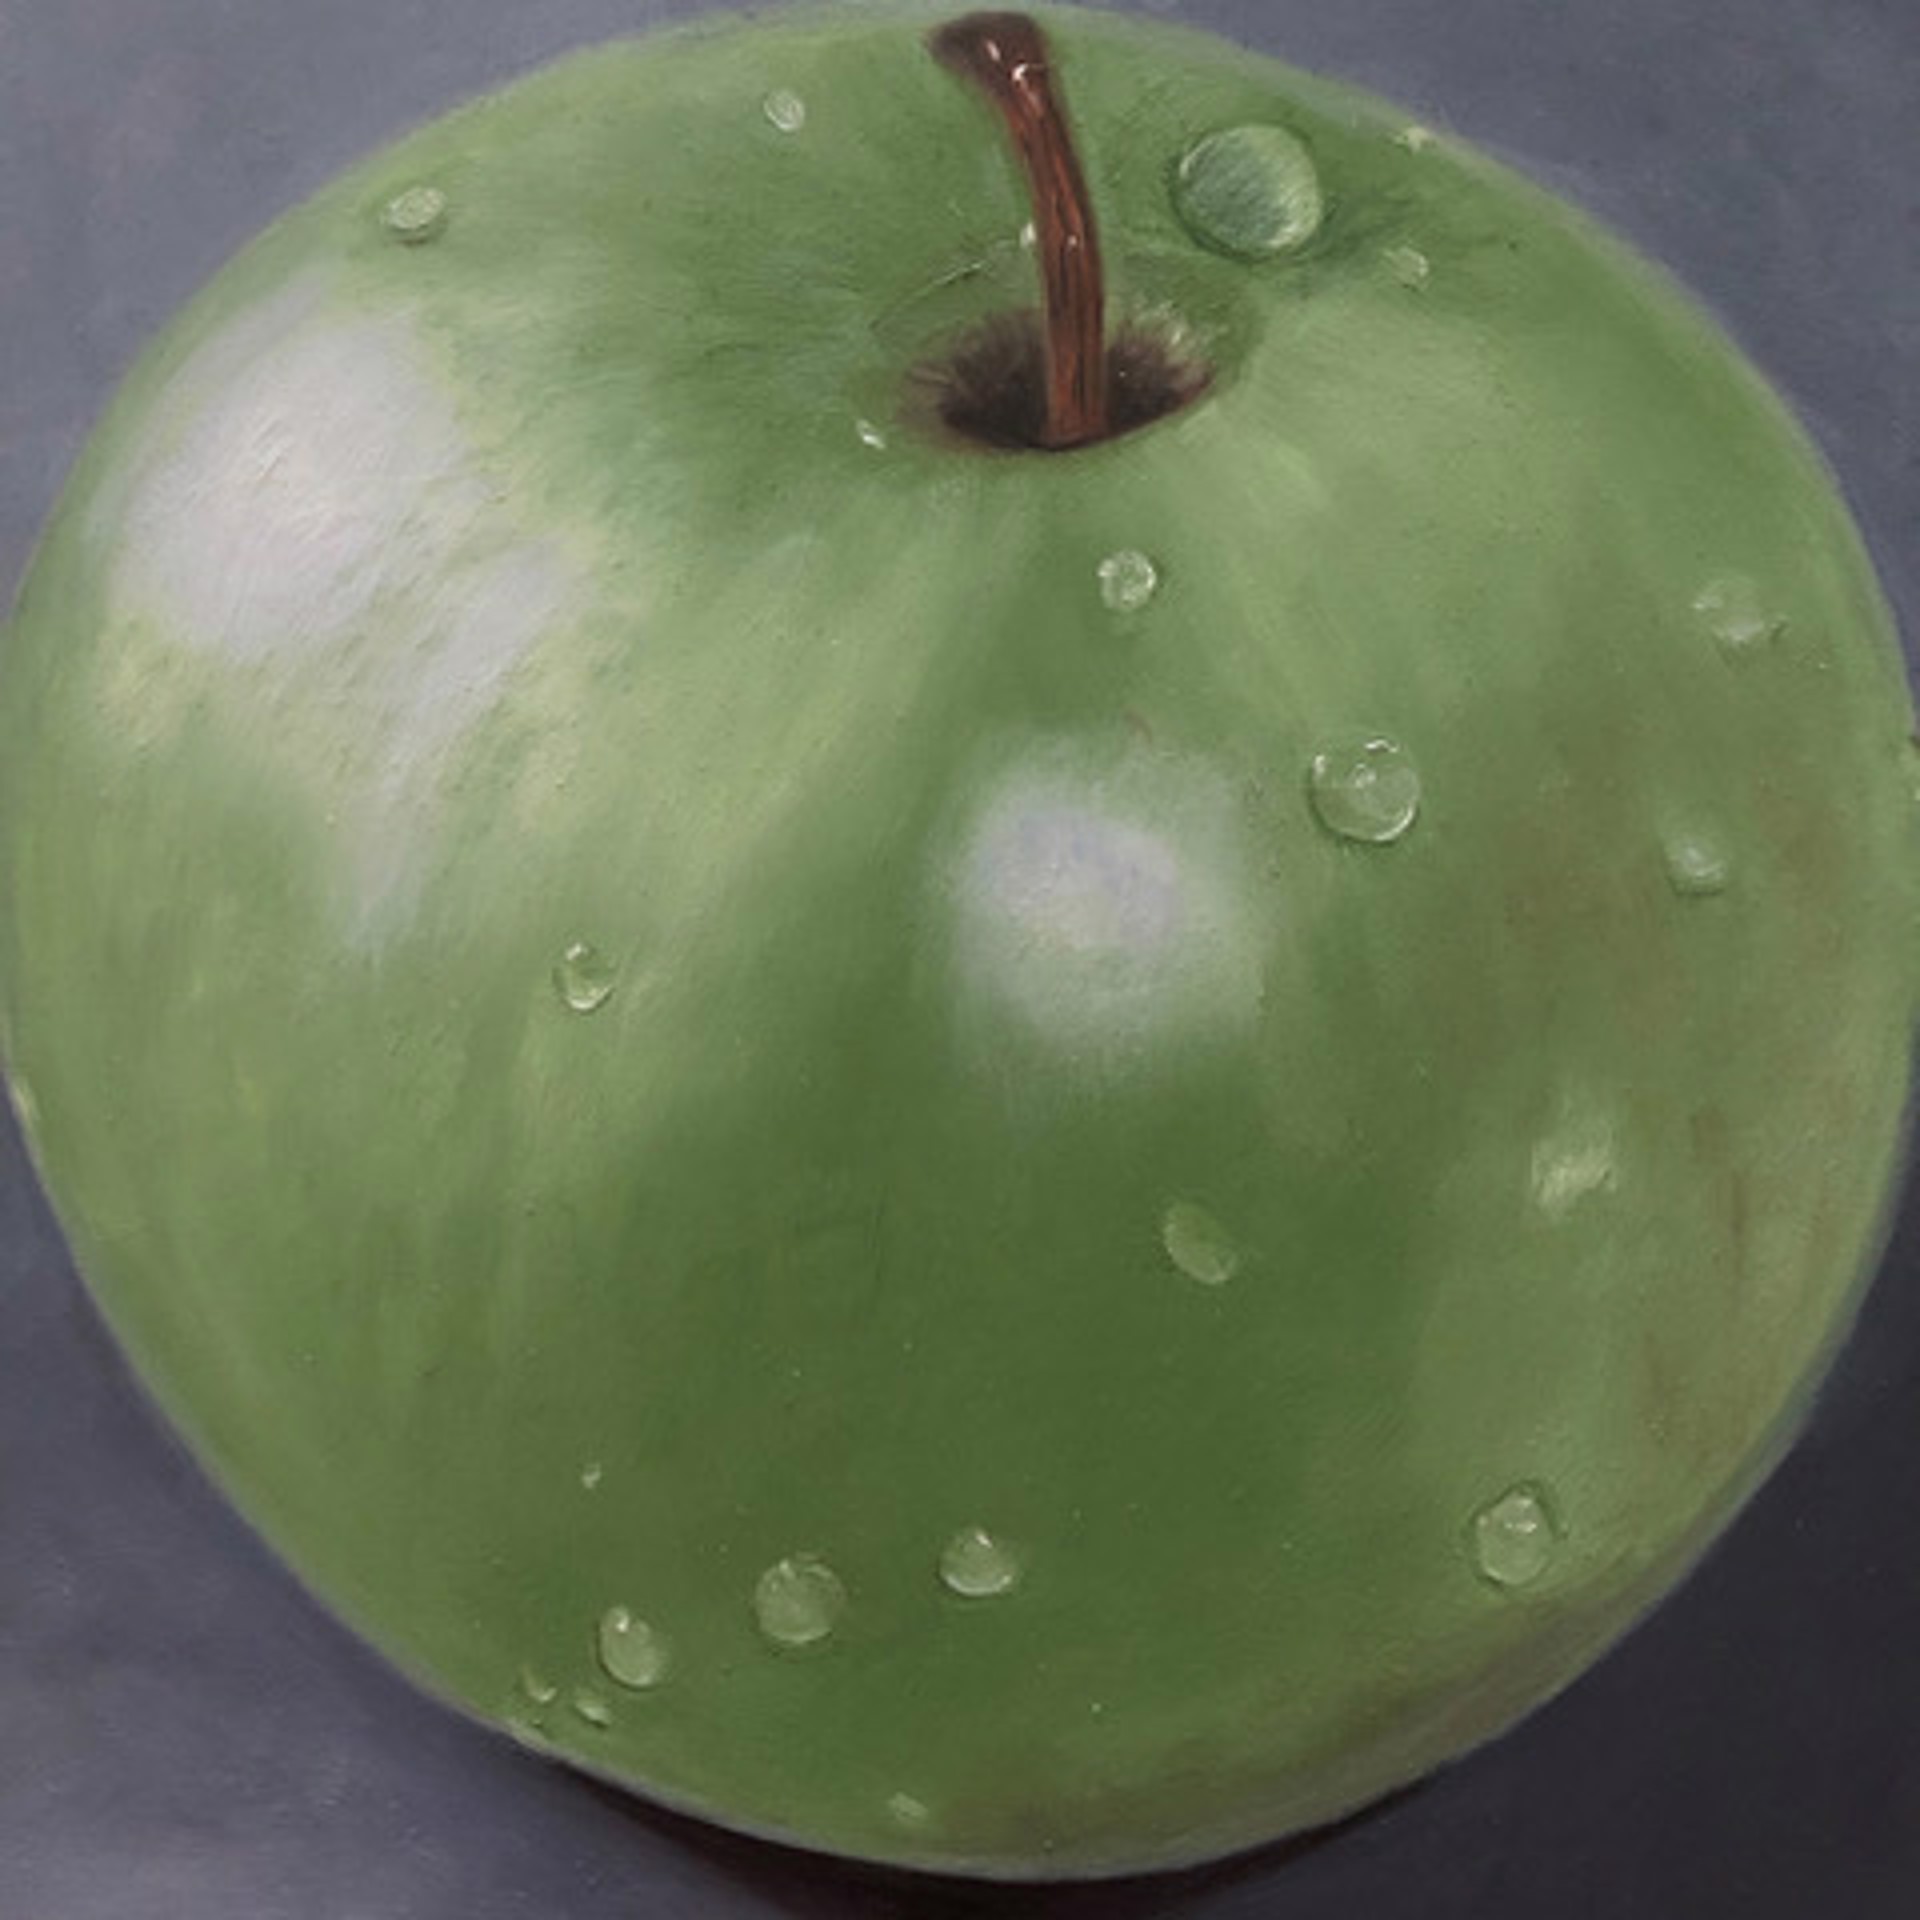 Little Green Apple by Karen Merkin